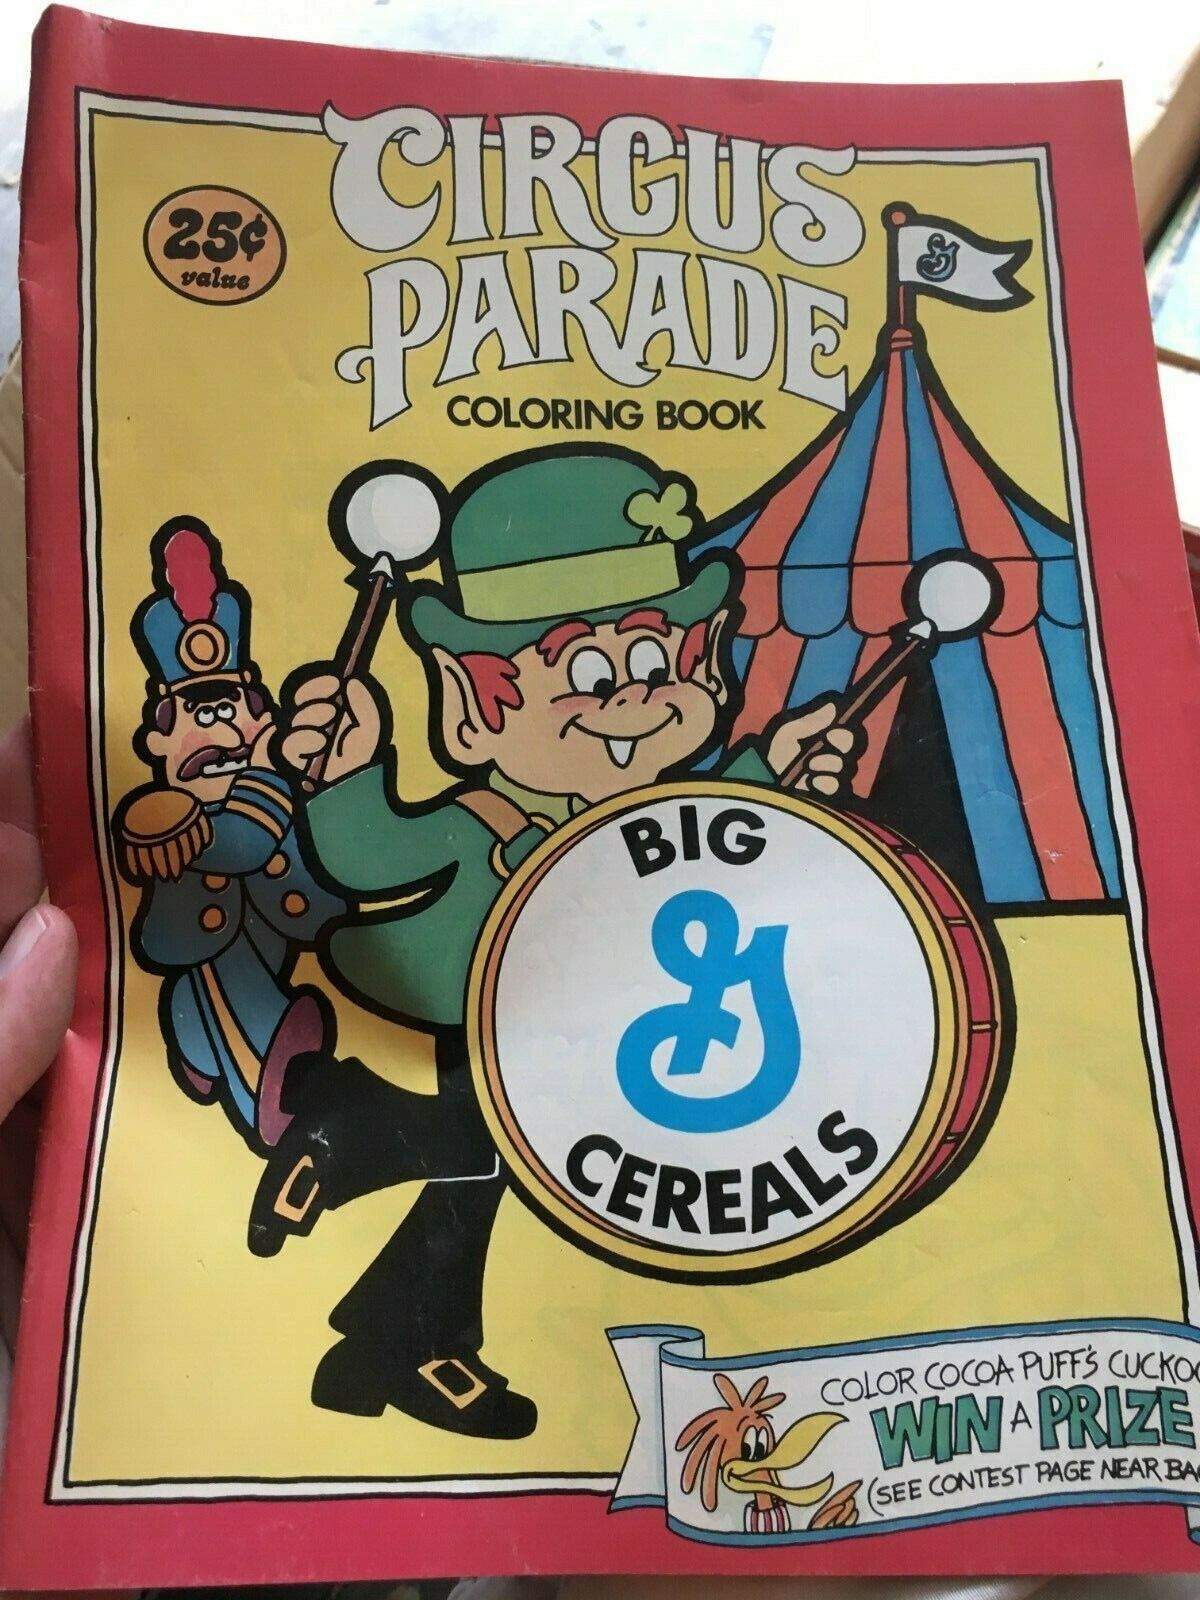 Big g cereals